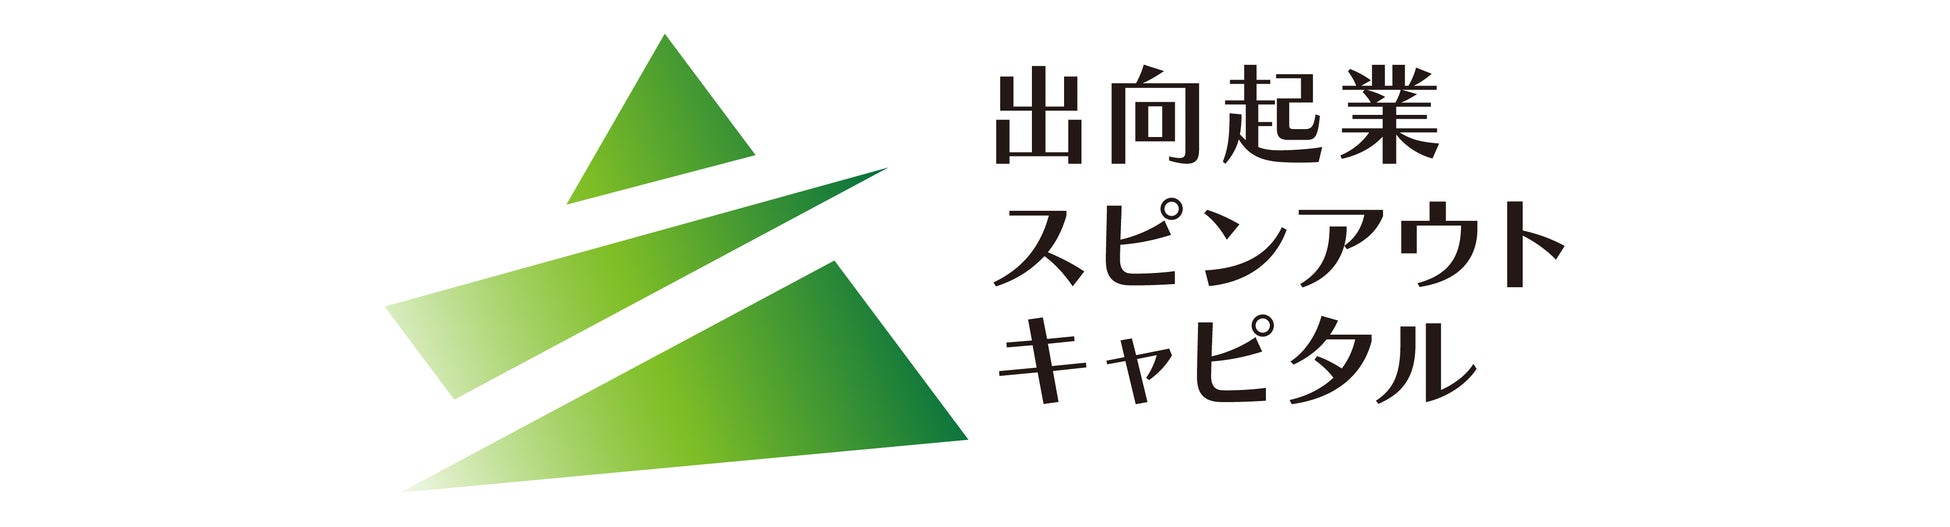 福井銀行、福井新聞社が地域DX推進へ共同出資会社「株式会社ふくいのデジタル」を設立